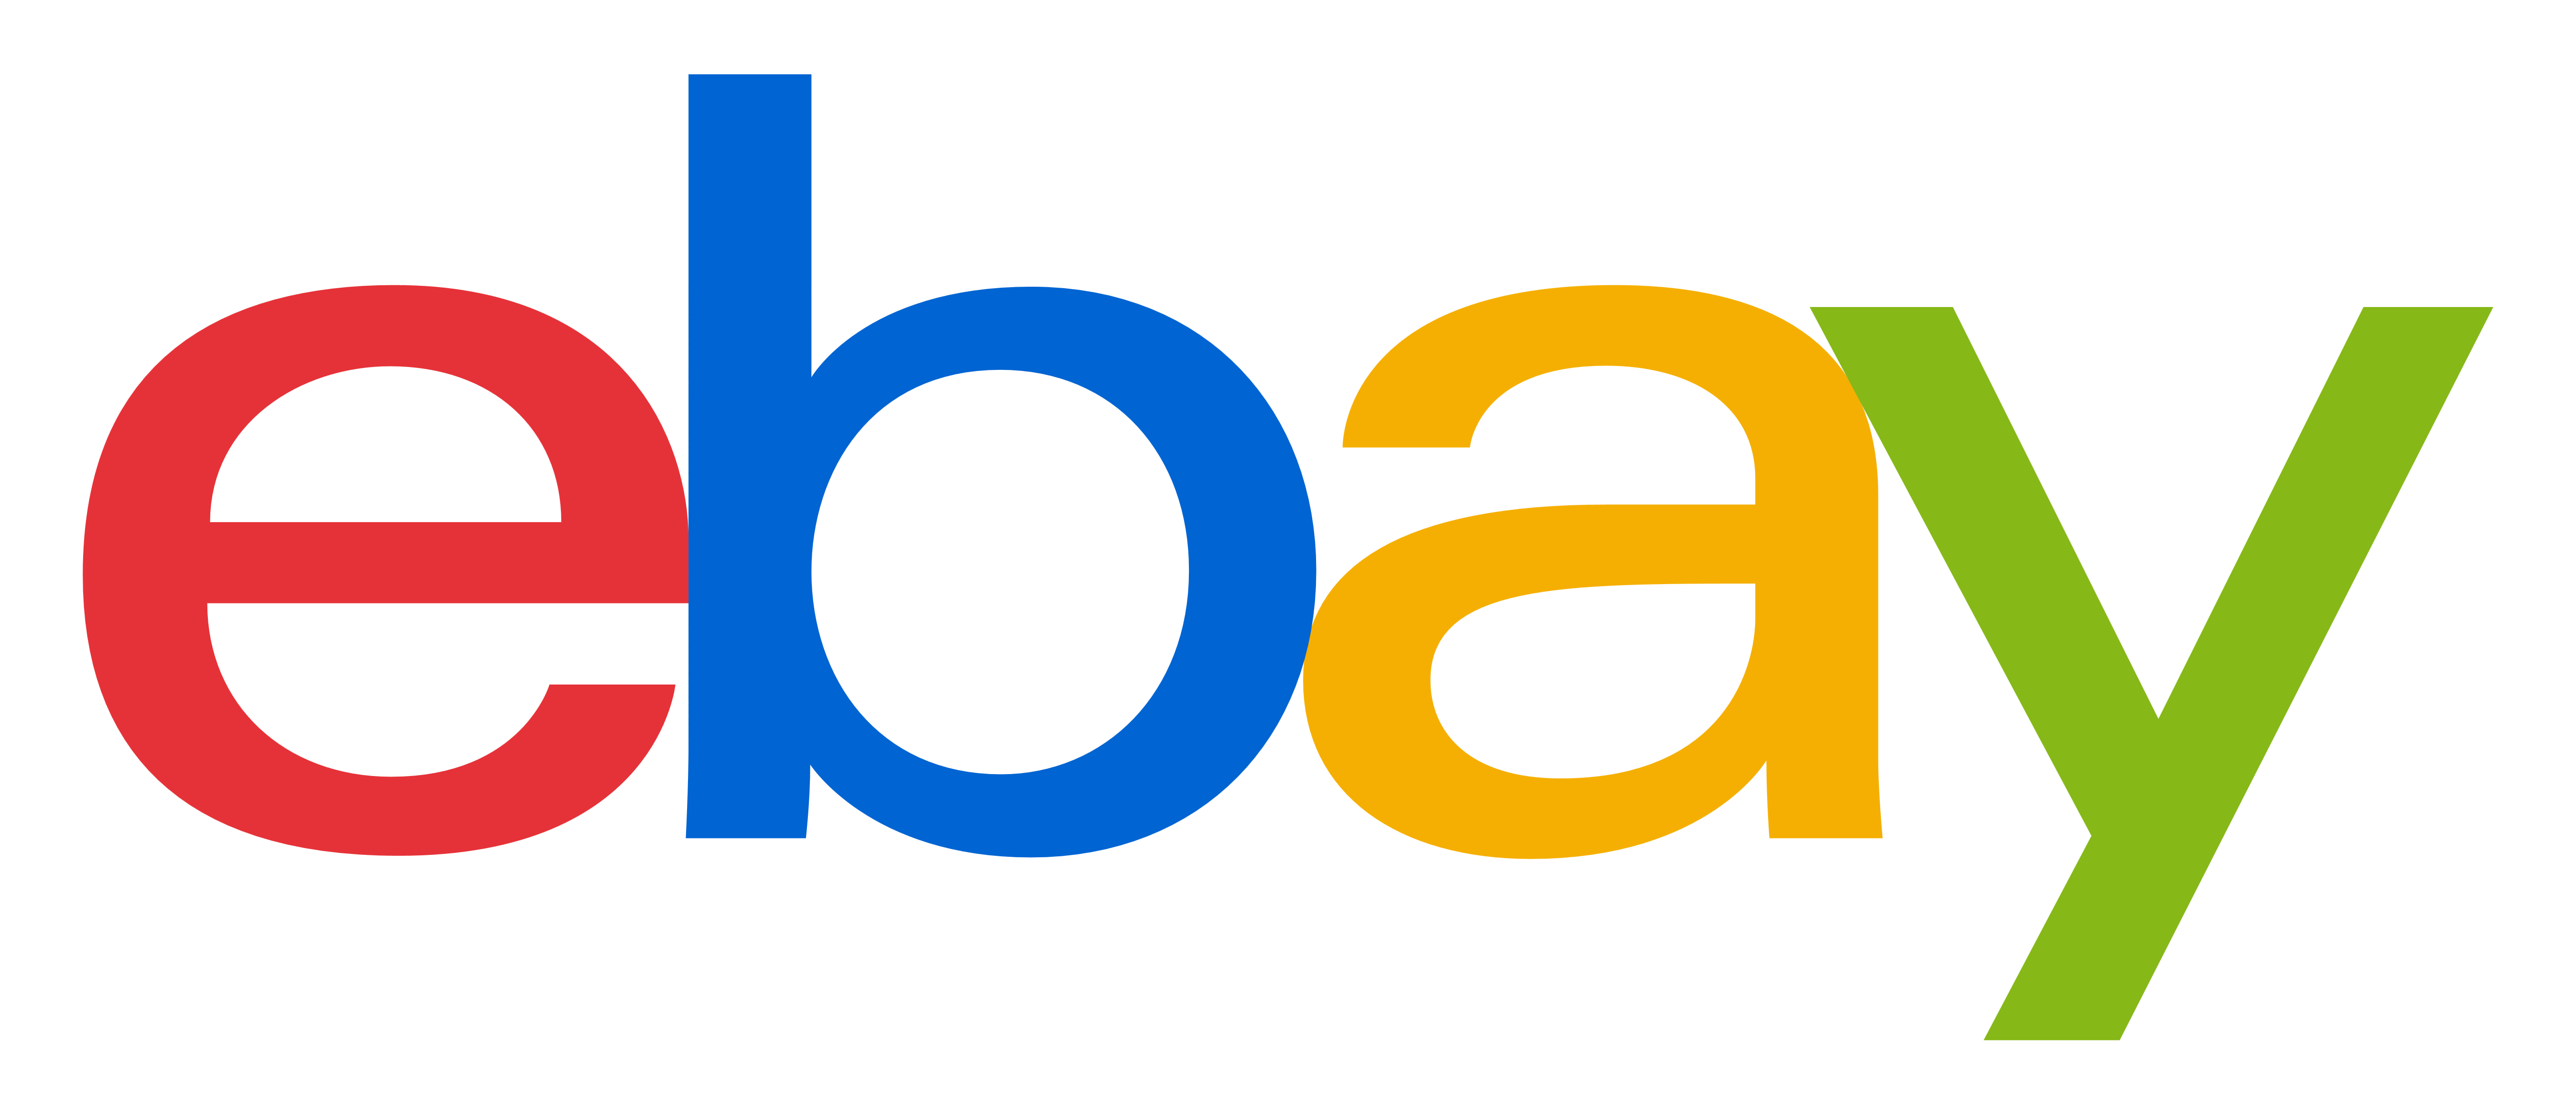 Gambar Transparan logo eBay